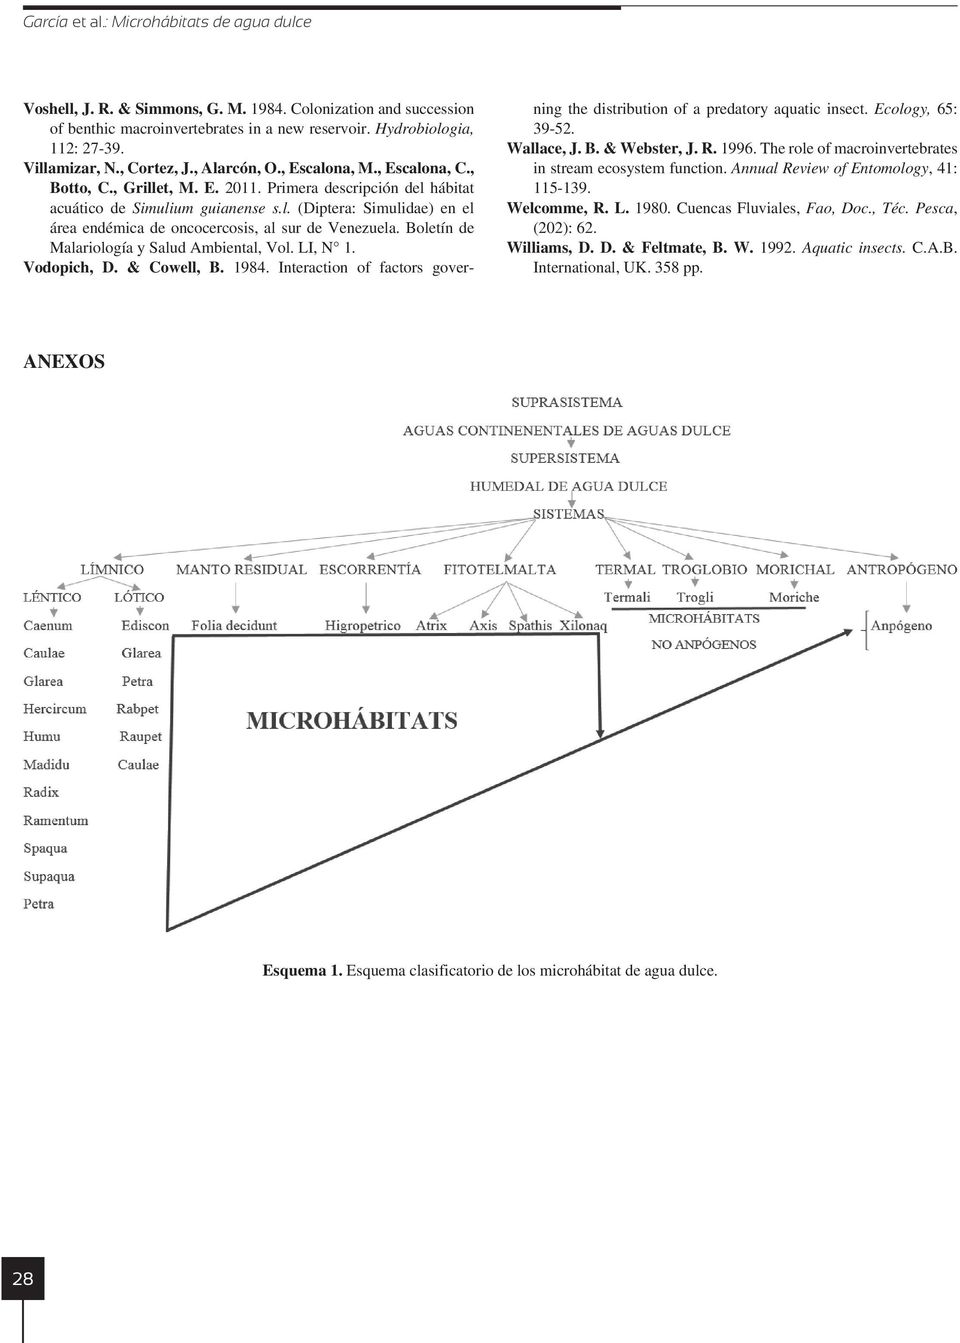 Boletín de Malariología y Salud Ambiental, Vol. LI, N 1. Vodopich, D. & Cowell, B. 1984. Interaction of factors governing the distribution of a predatory aquatic insect. Ecology, 65: 39-52.